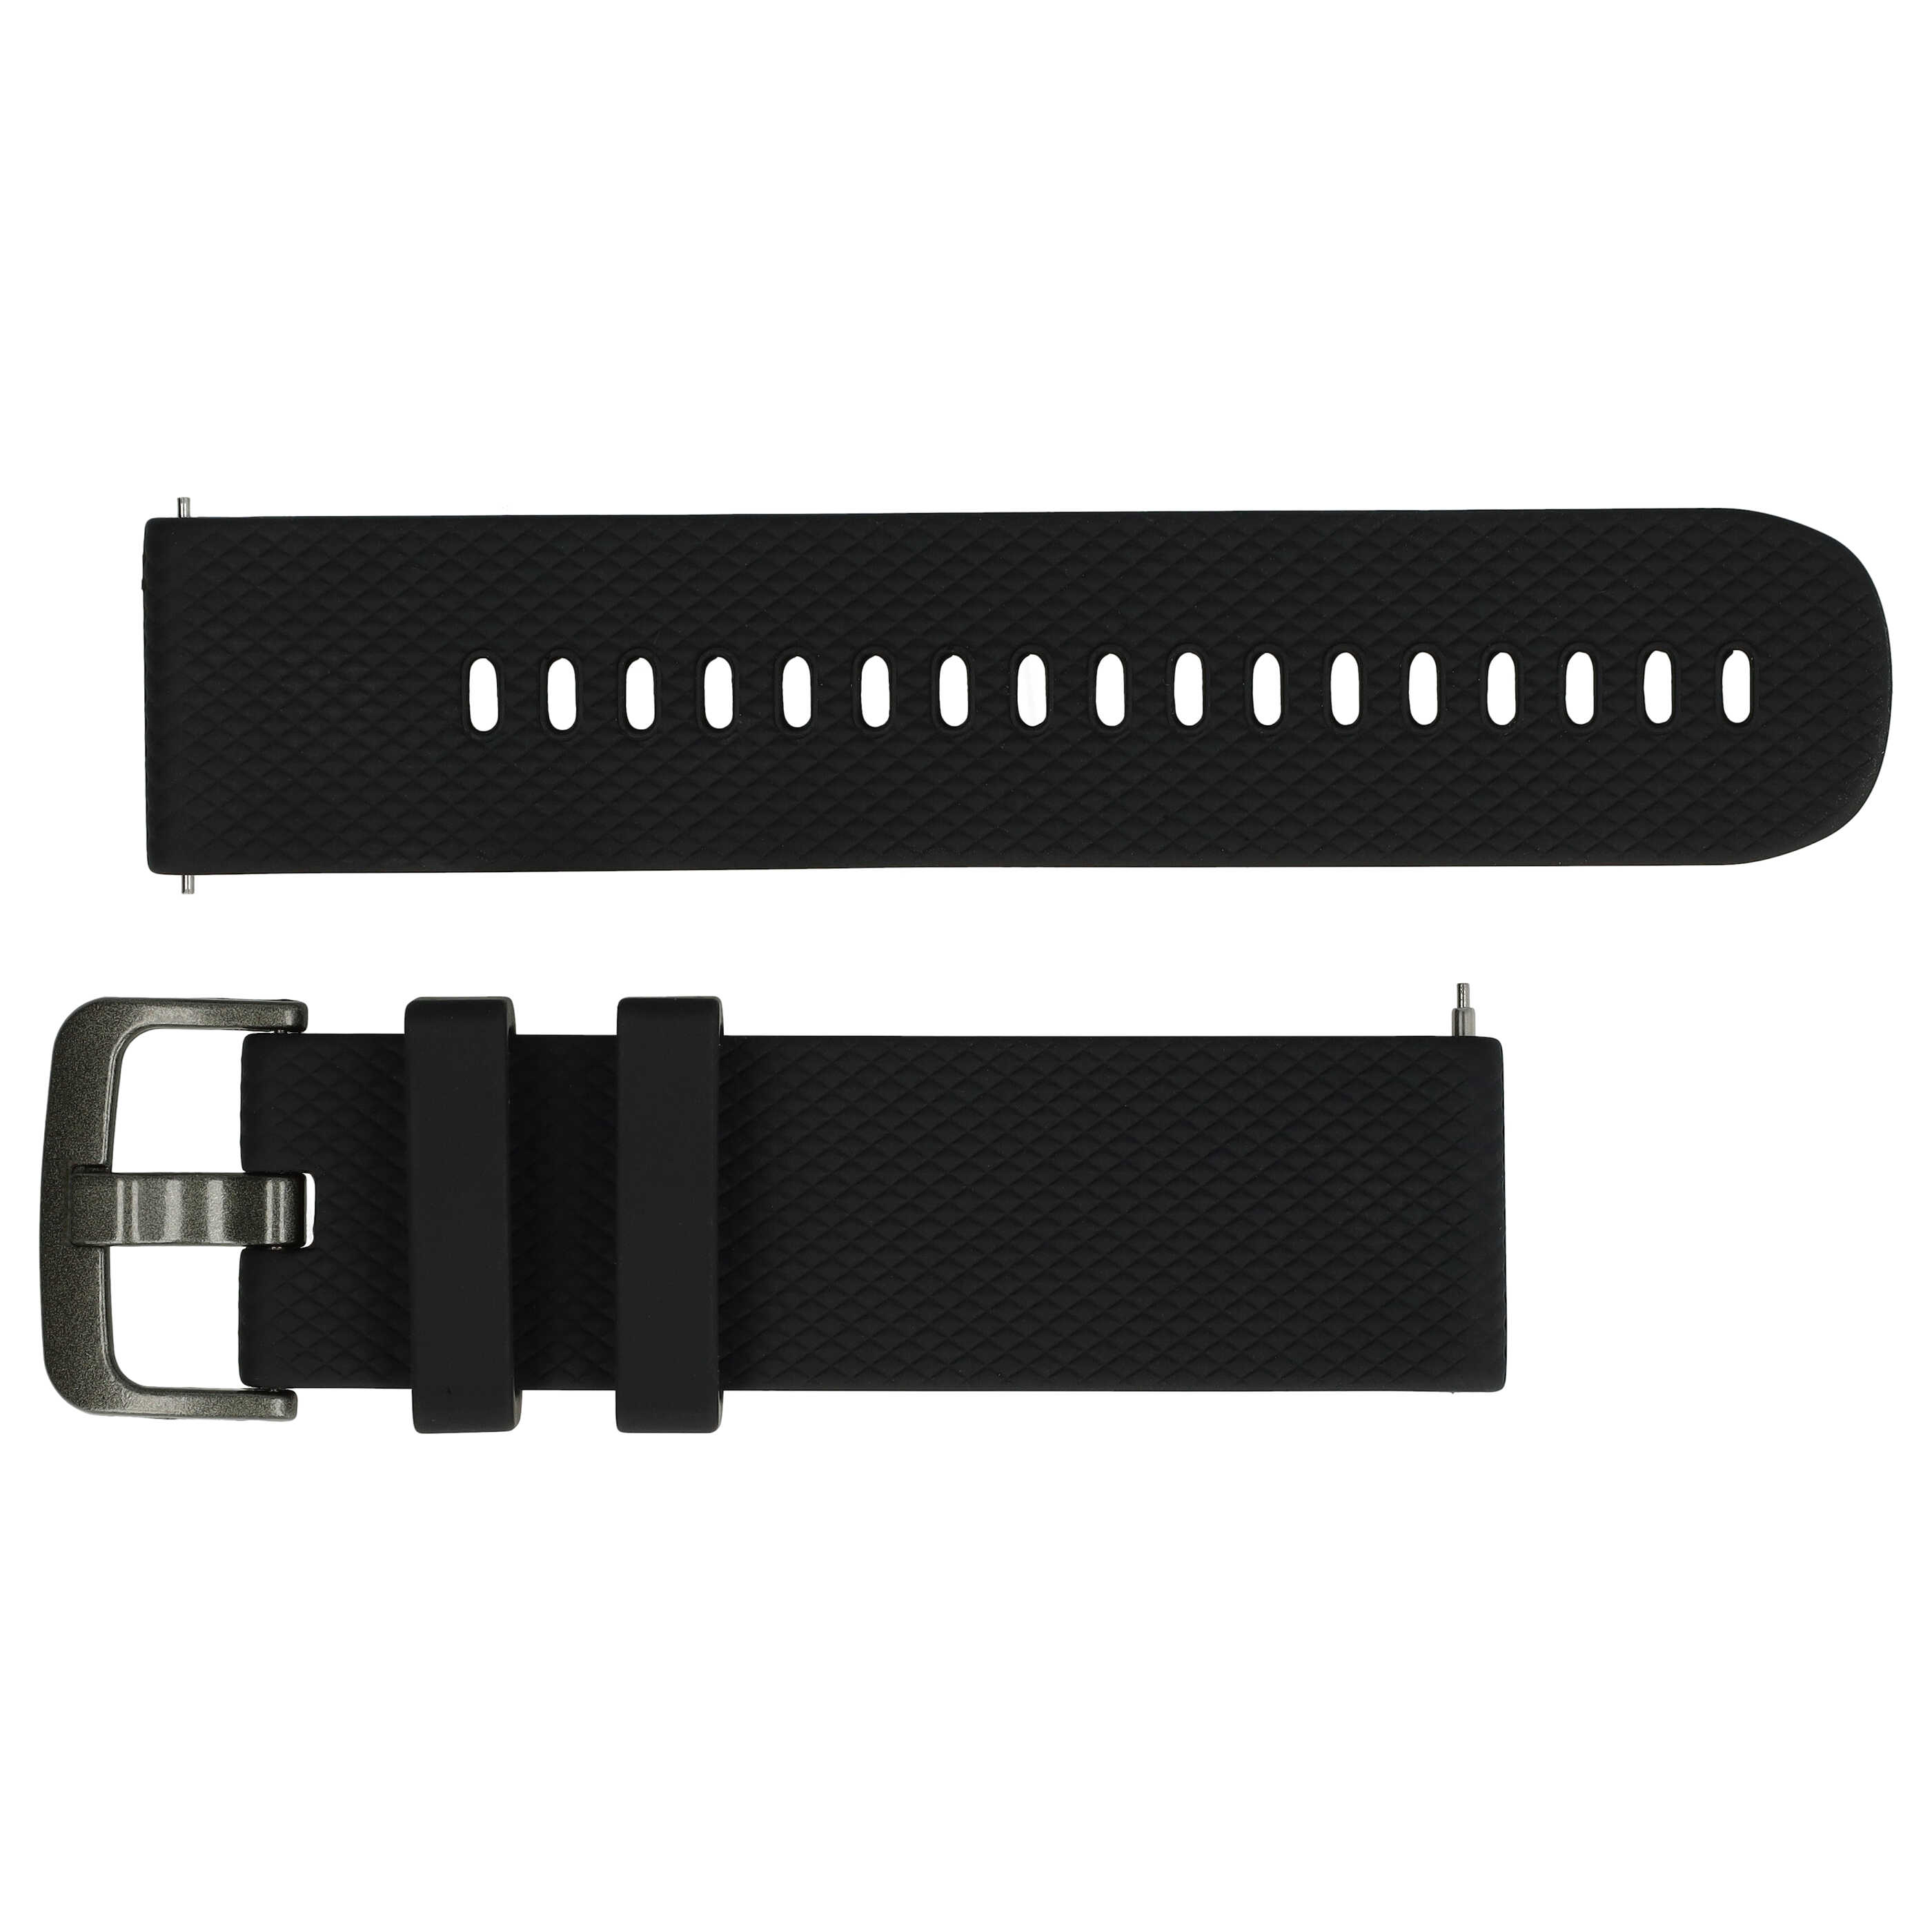 cinturino S per Samsung Galaxy Watch Smartwatch - fino a 232 mm circonferenza del polso, silicone, nero